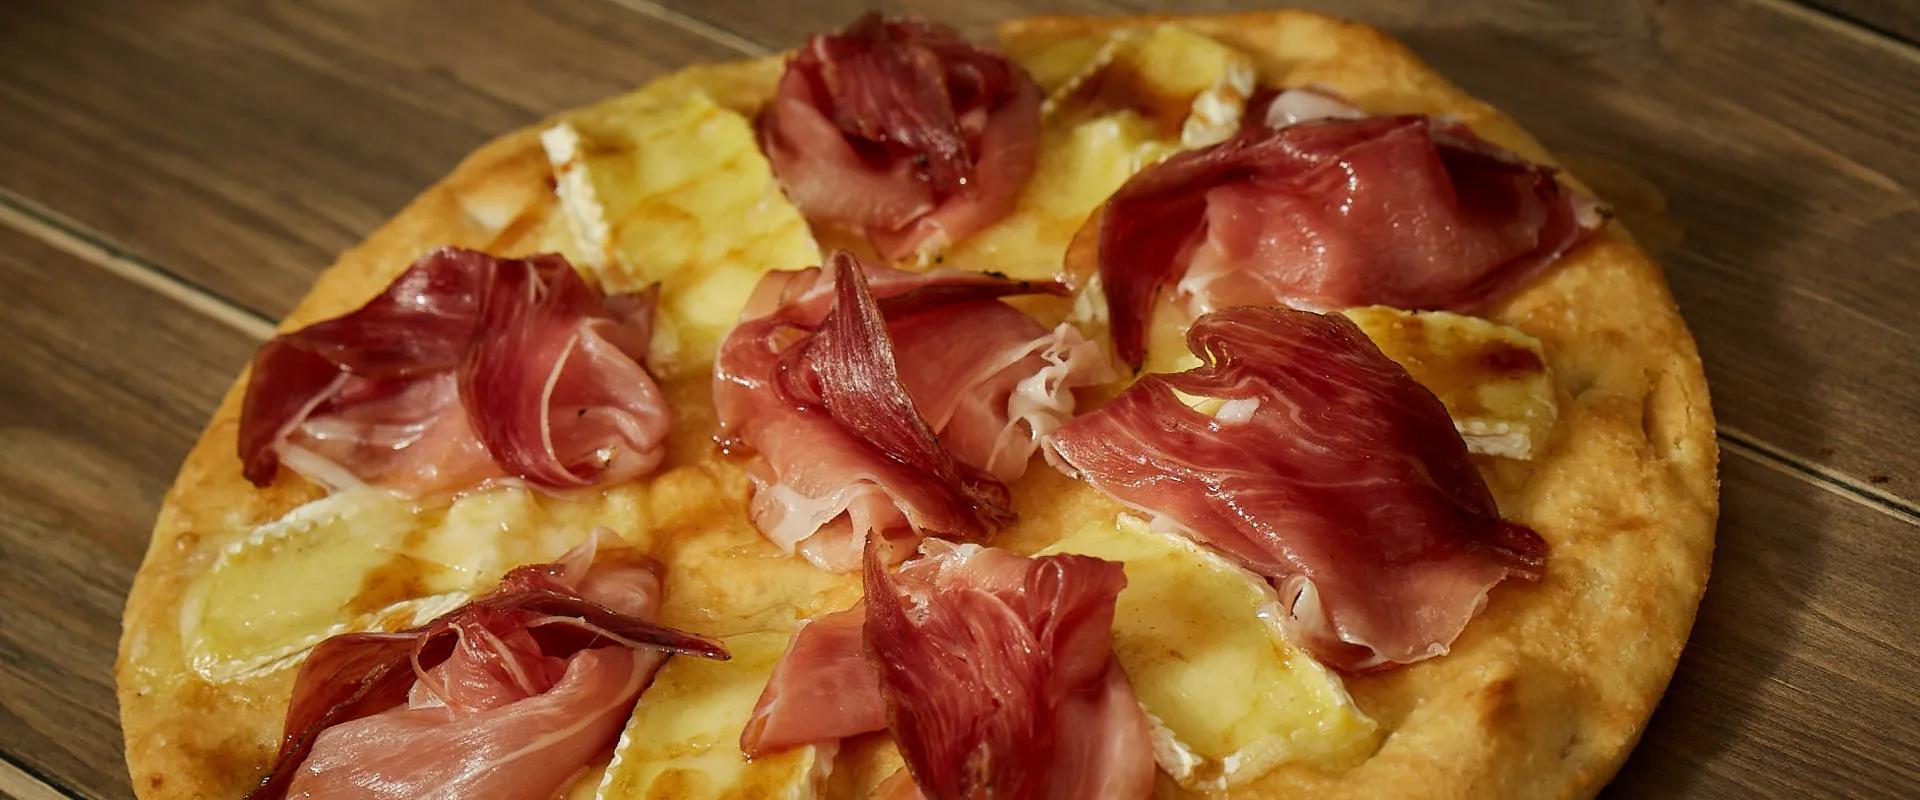 Ricetta Pizza con Speck, Brie e sciroppo d’acero - Salumi Pasini